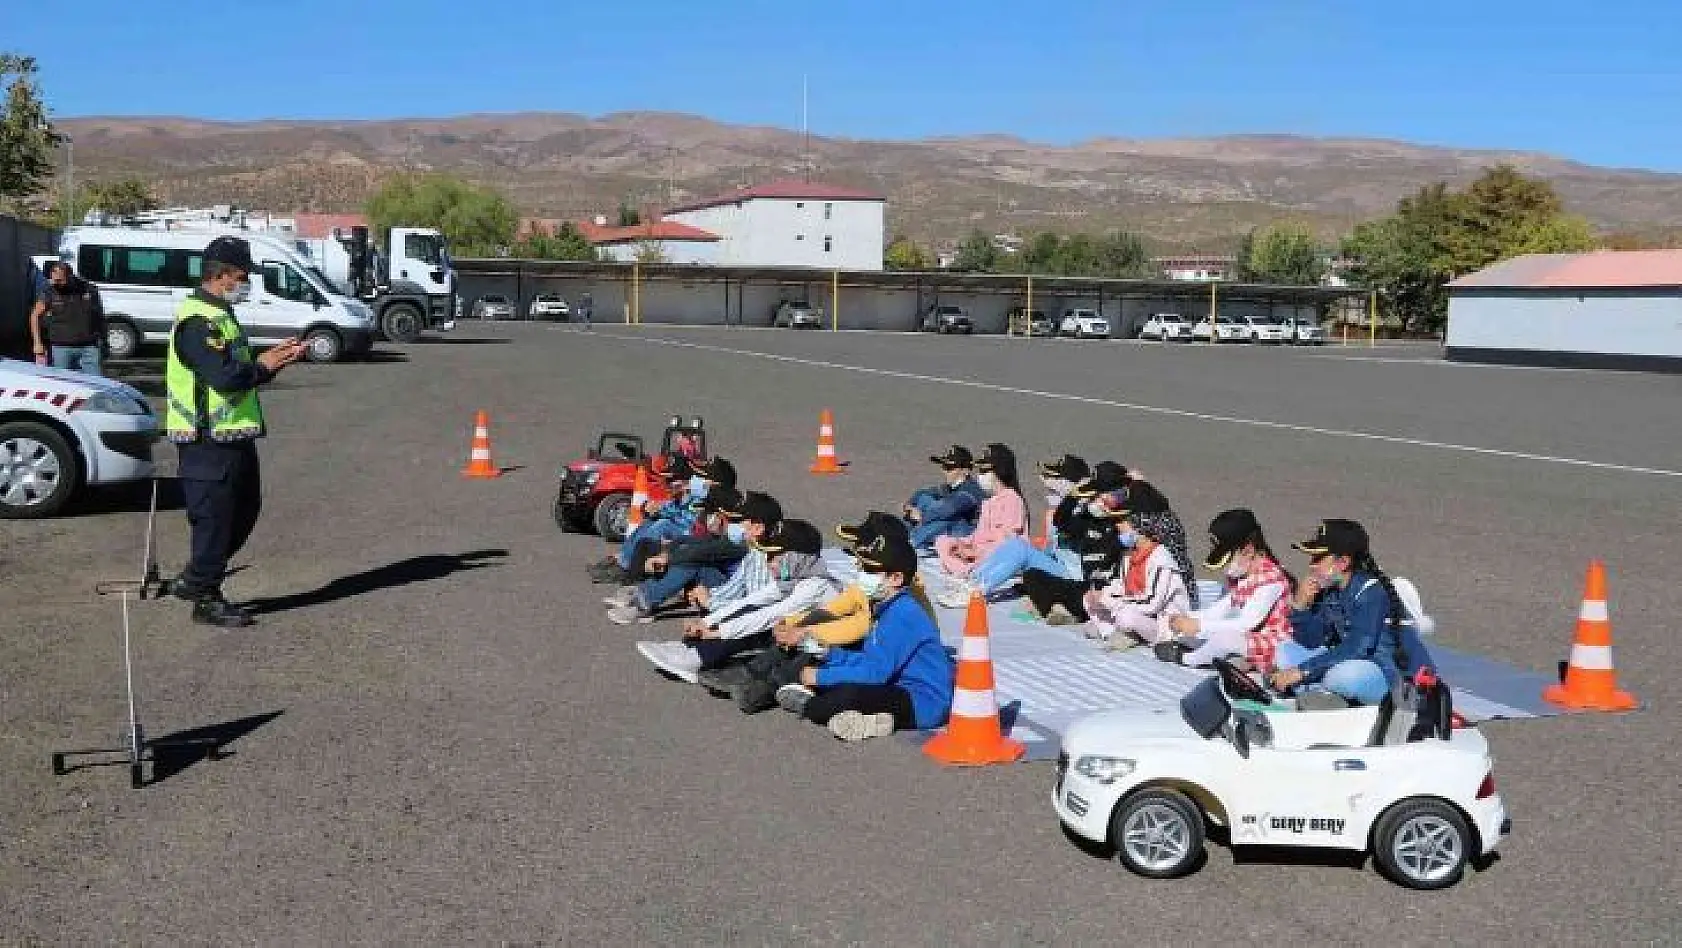 Bingöl'de öğrencilere trafik eğitimi verildi